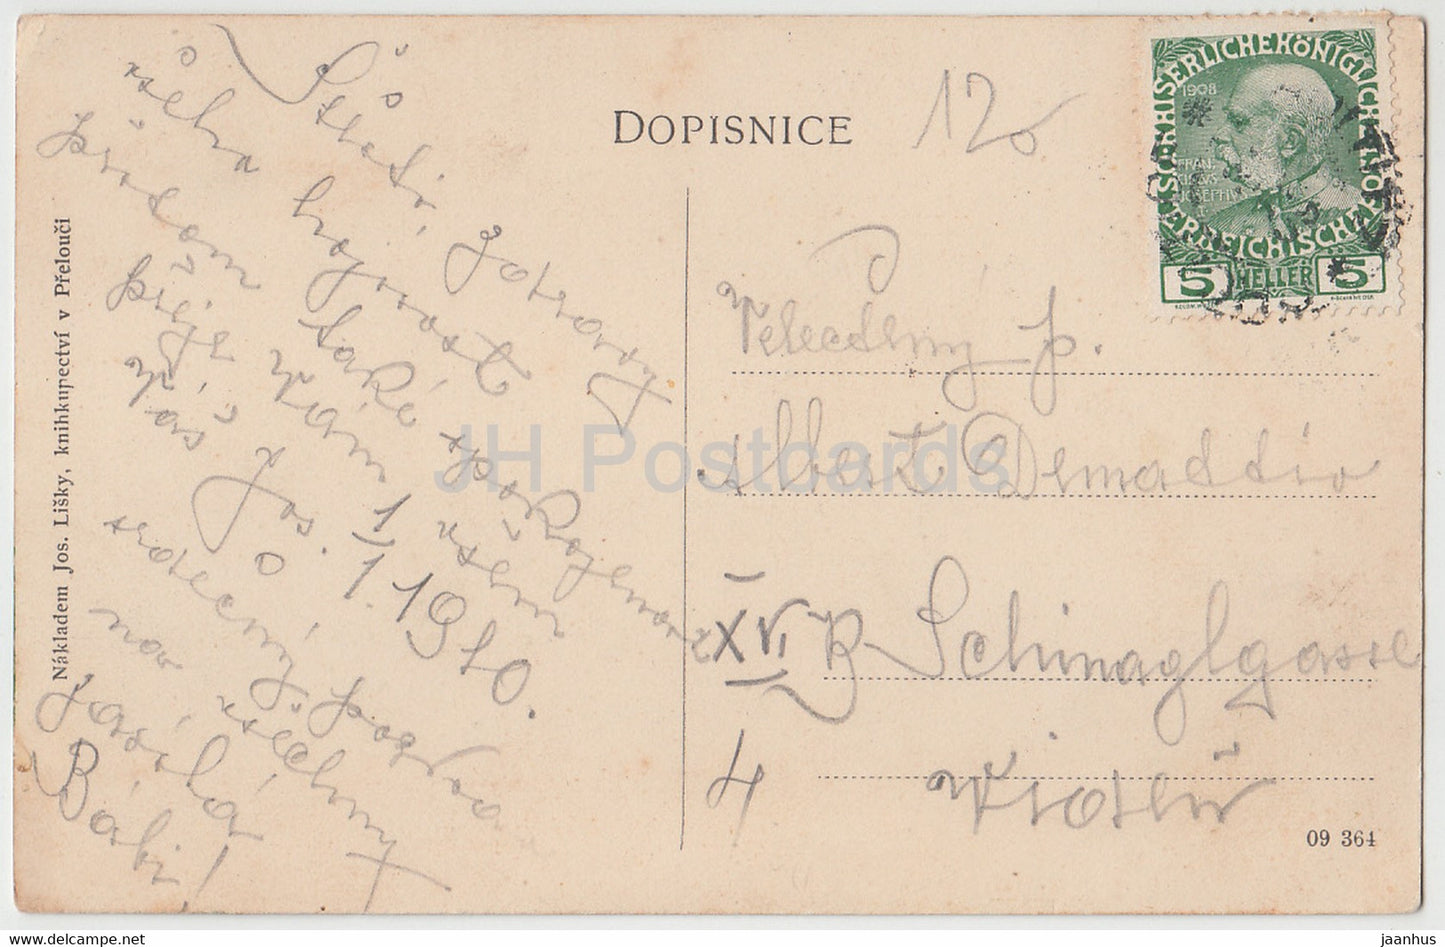 Prelouc – alte Postkarte – 1910 – Tschechien – gebraucht